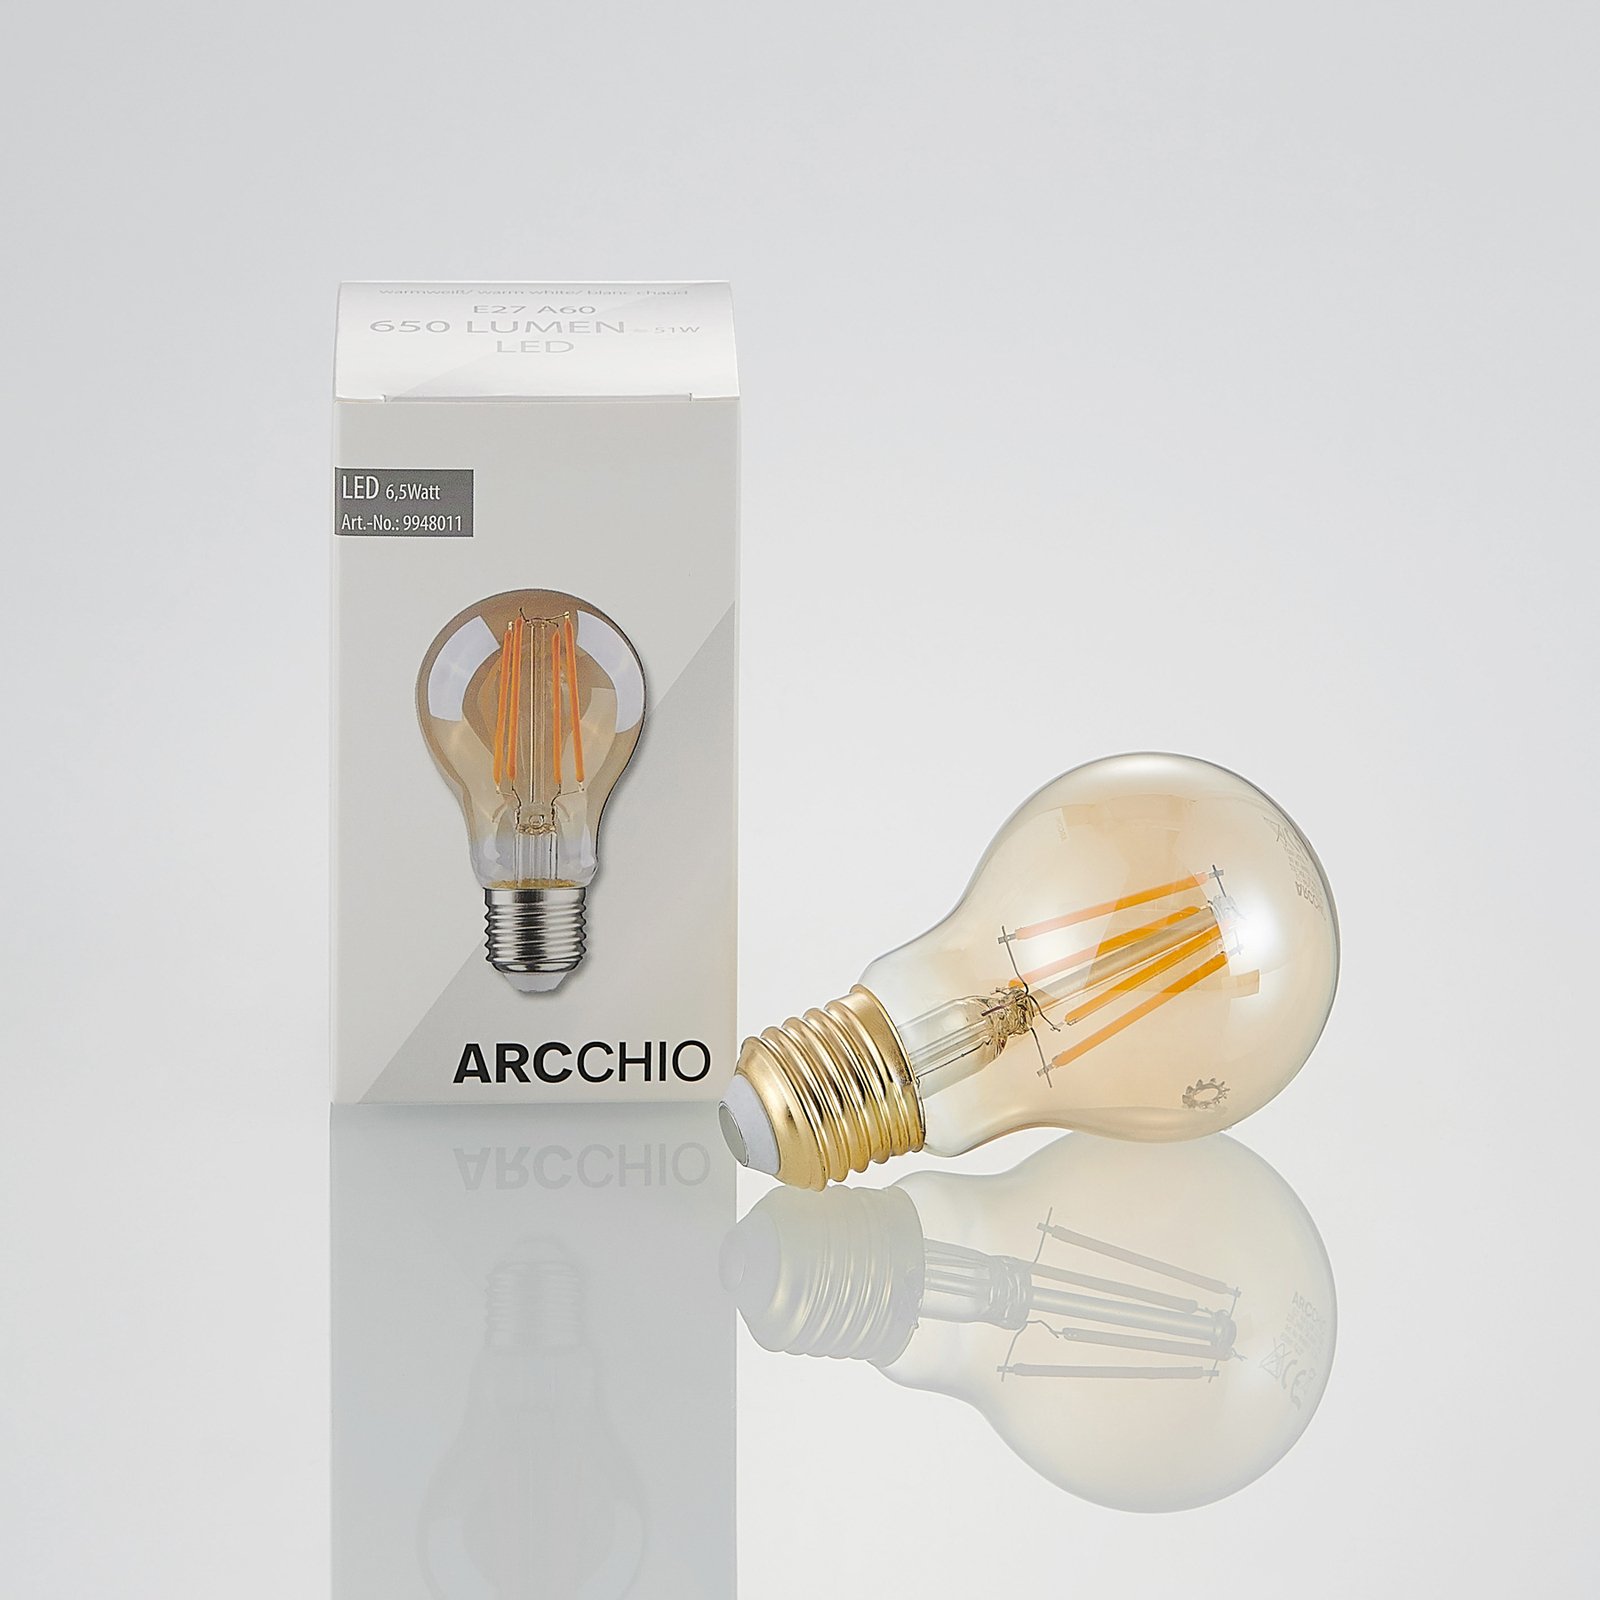 LED lamp E27 6,5W 825 amber 3-Step-dimmer 2/set